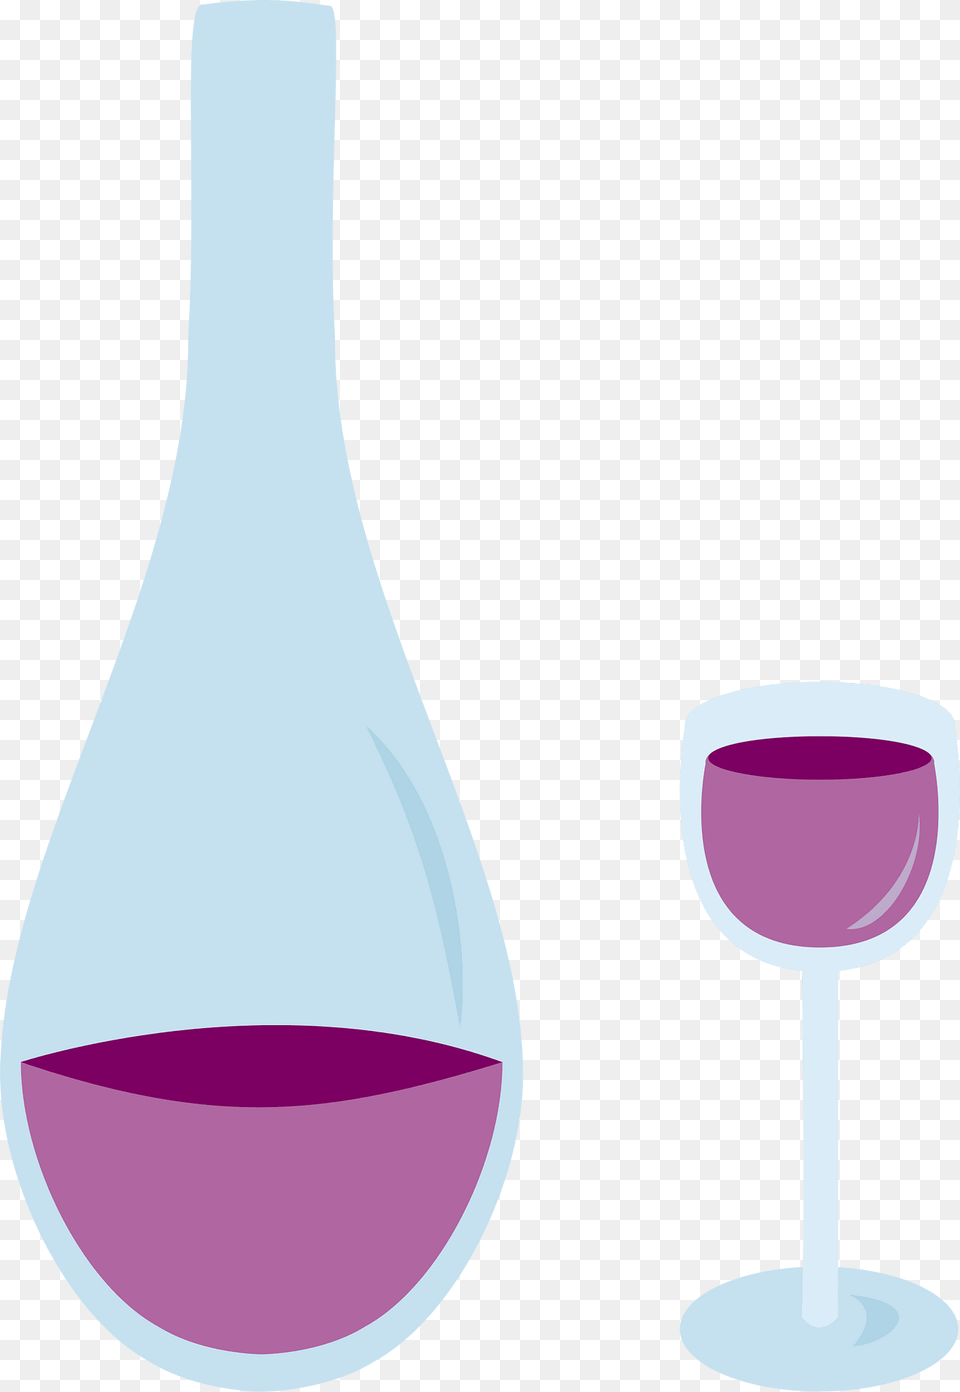 Bottle Clipart, Alcohol, Beverage, Glass, Liquor Free Transparent Png